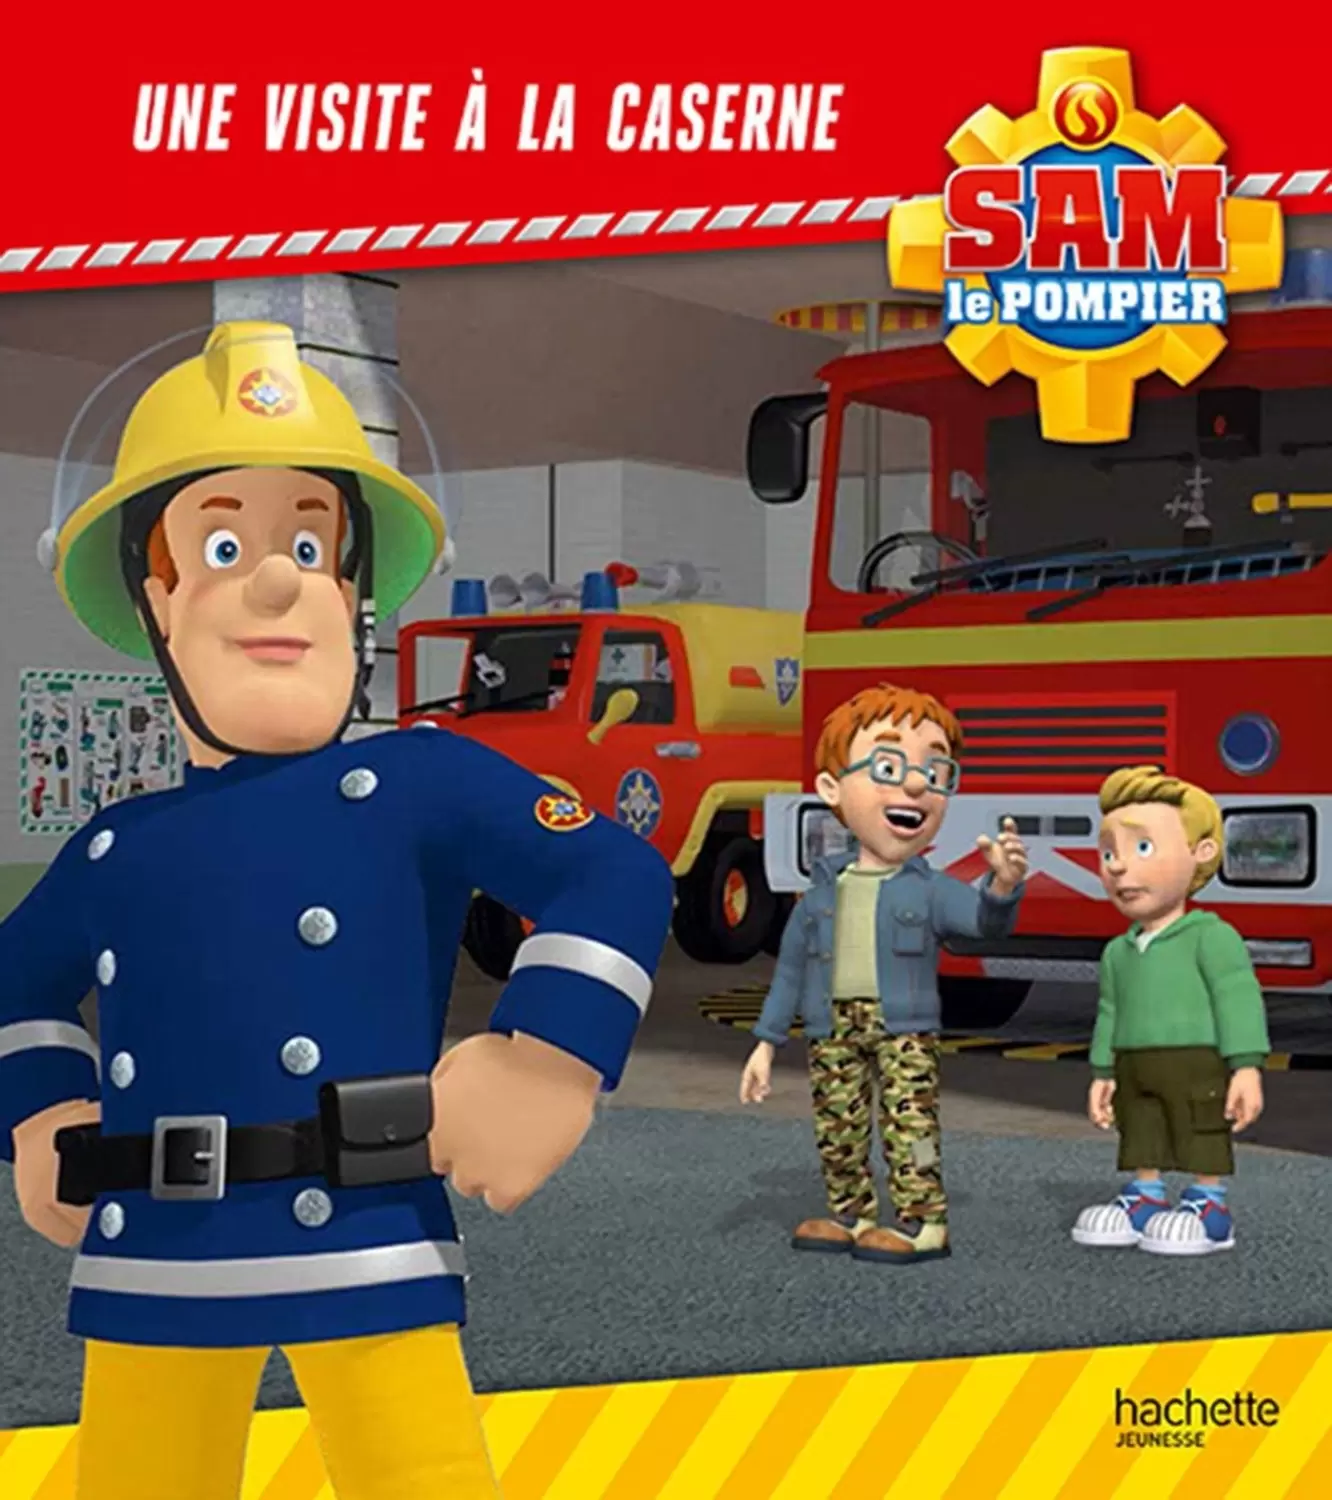 Sam le pompier - Visite à la caserne